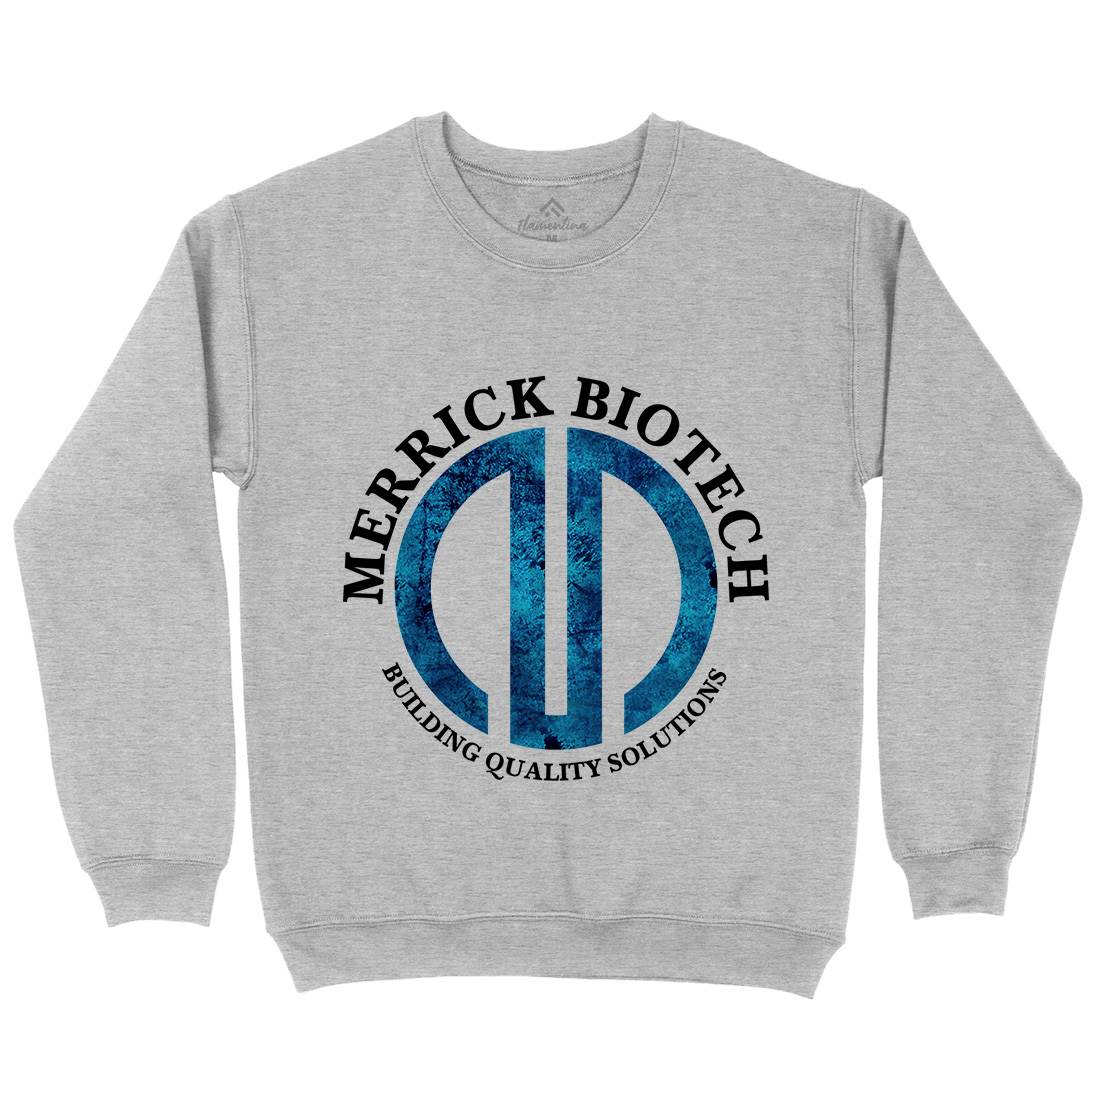 Merrick Biotech Kids Crew Neck Sweatshirt Space D393